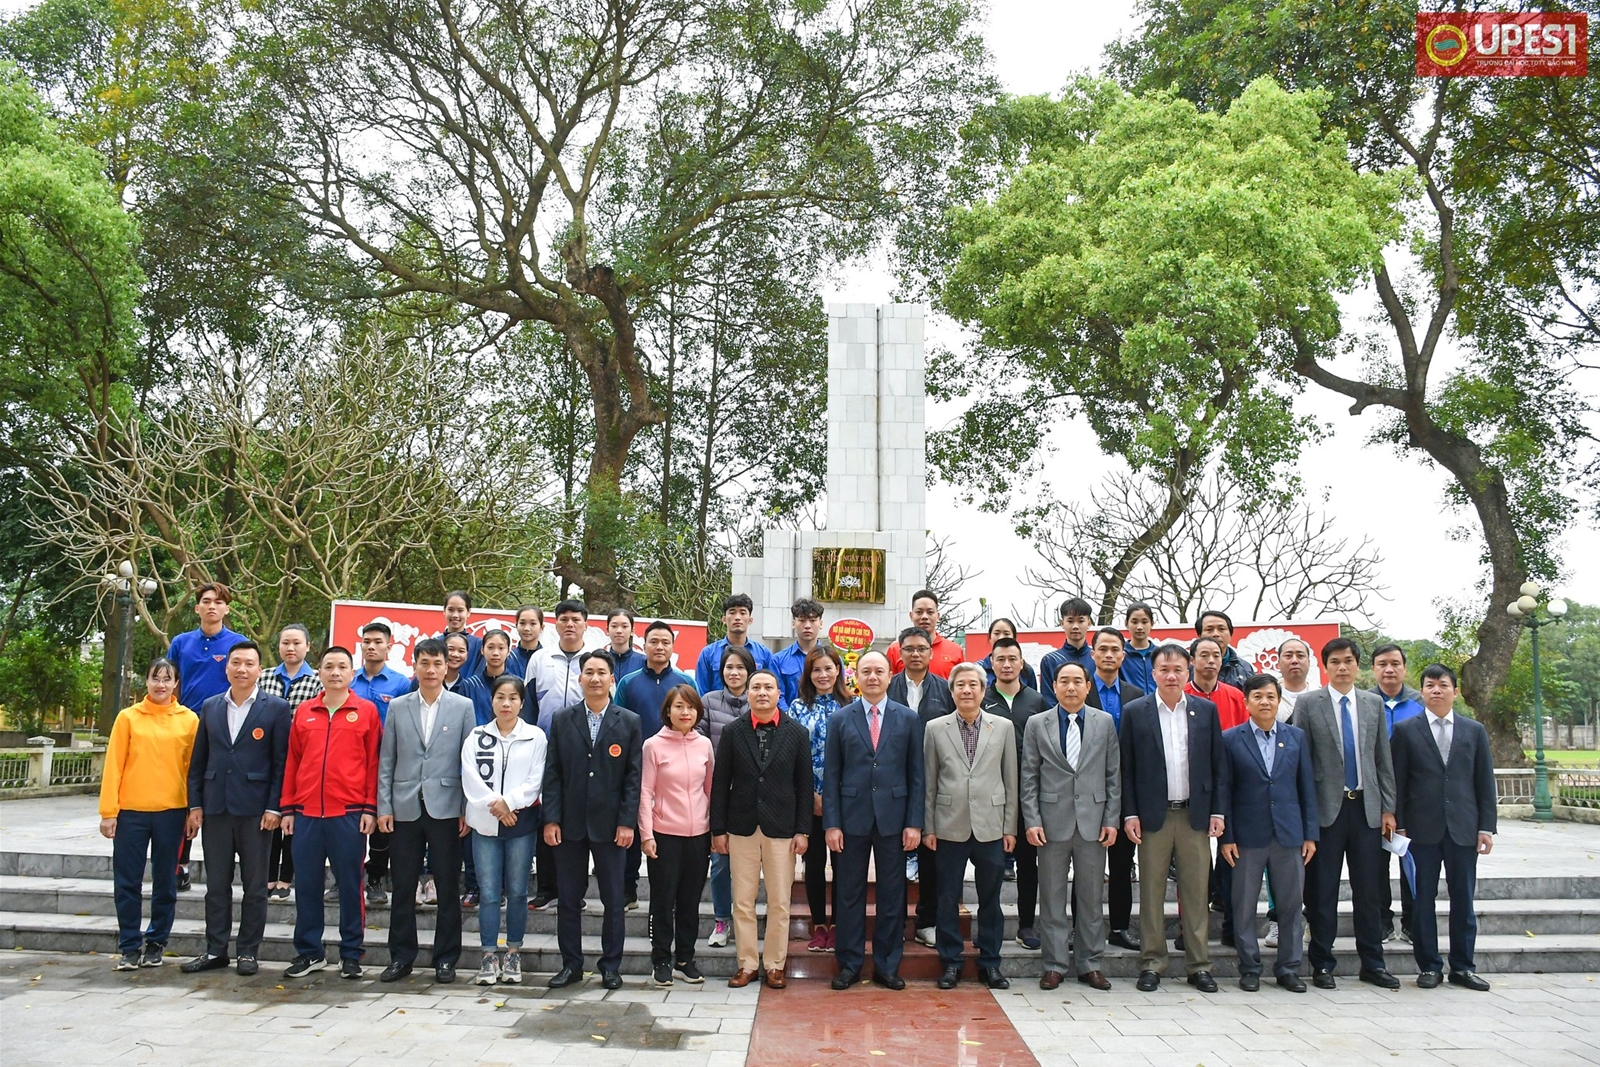 Lễ kỷ niệm 92 năm ngày thành lập Đoàn thanh niên cộng sản Hồ Chí Minh (26/3/1931-26/3/2023), 77 năm ngày Thể thao Việt Nam (1946-2023) và Hưởng ứng ngày tết trông cây năm 2023